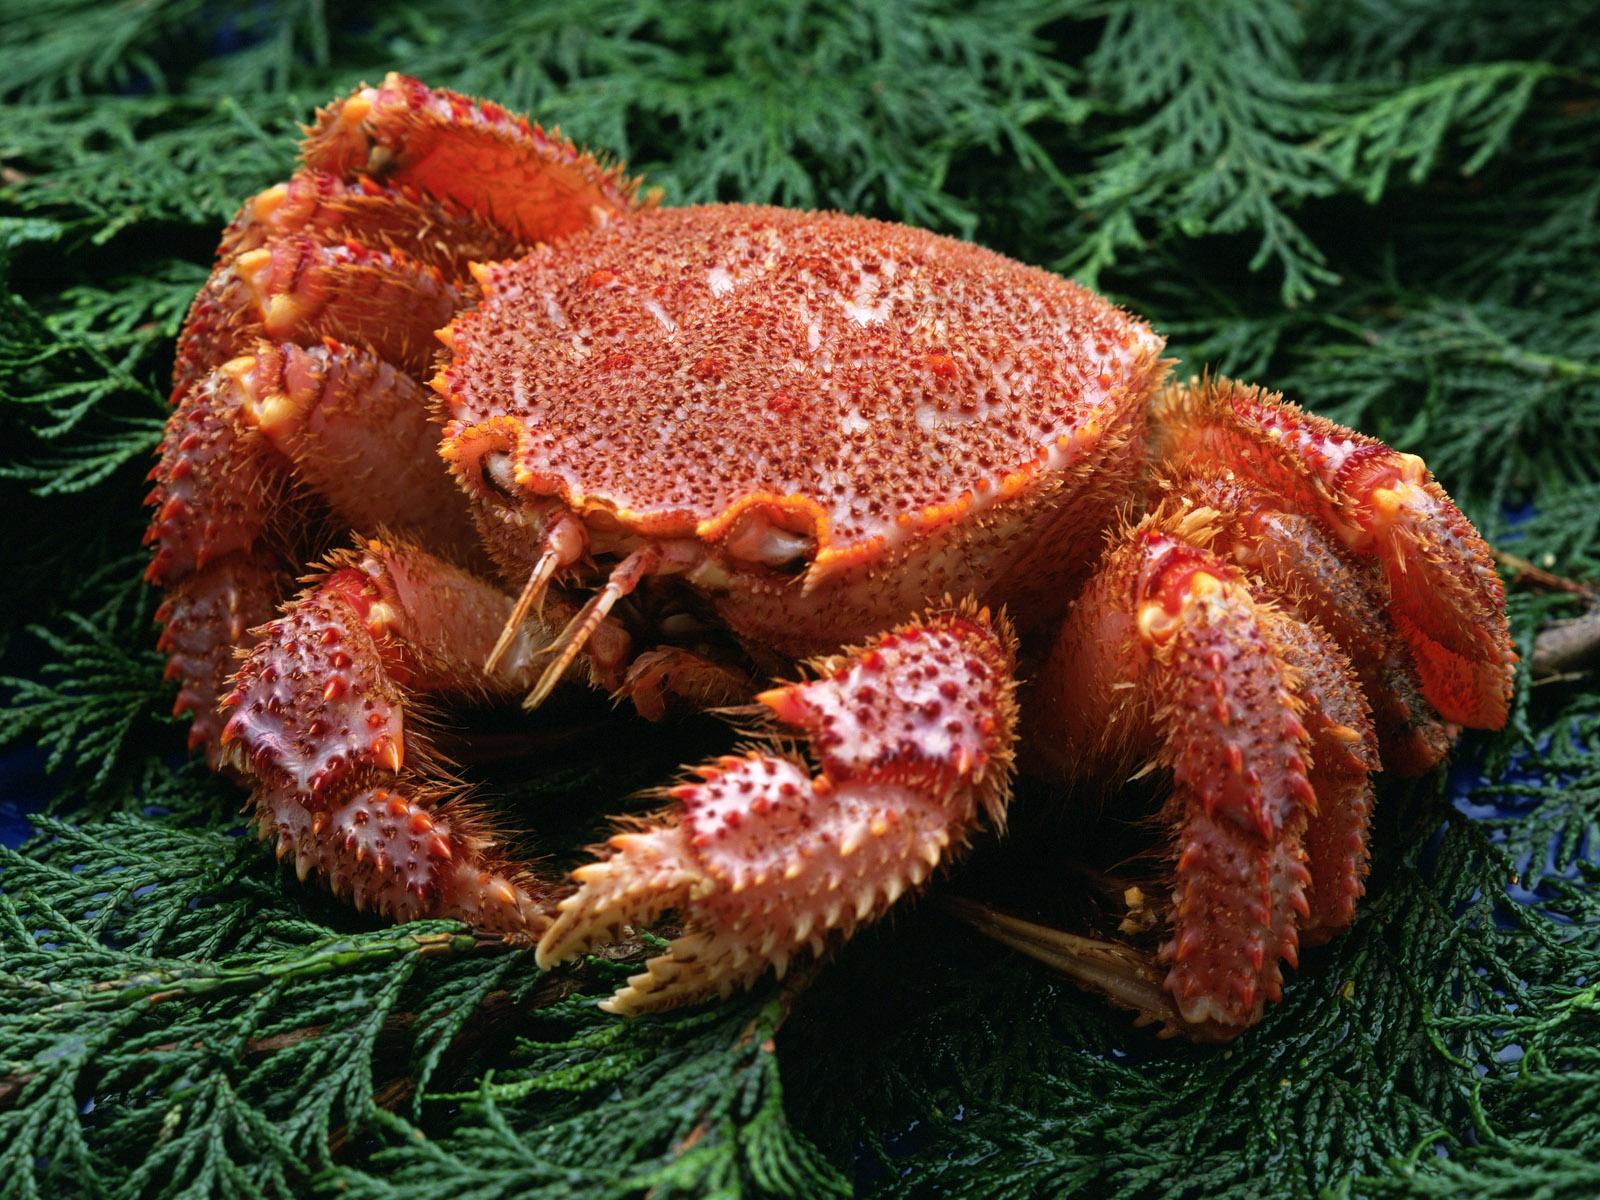 Afbeeldingen Krabben Voedsel Zeevruchten 1600x1200 krab spijs